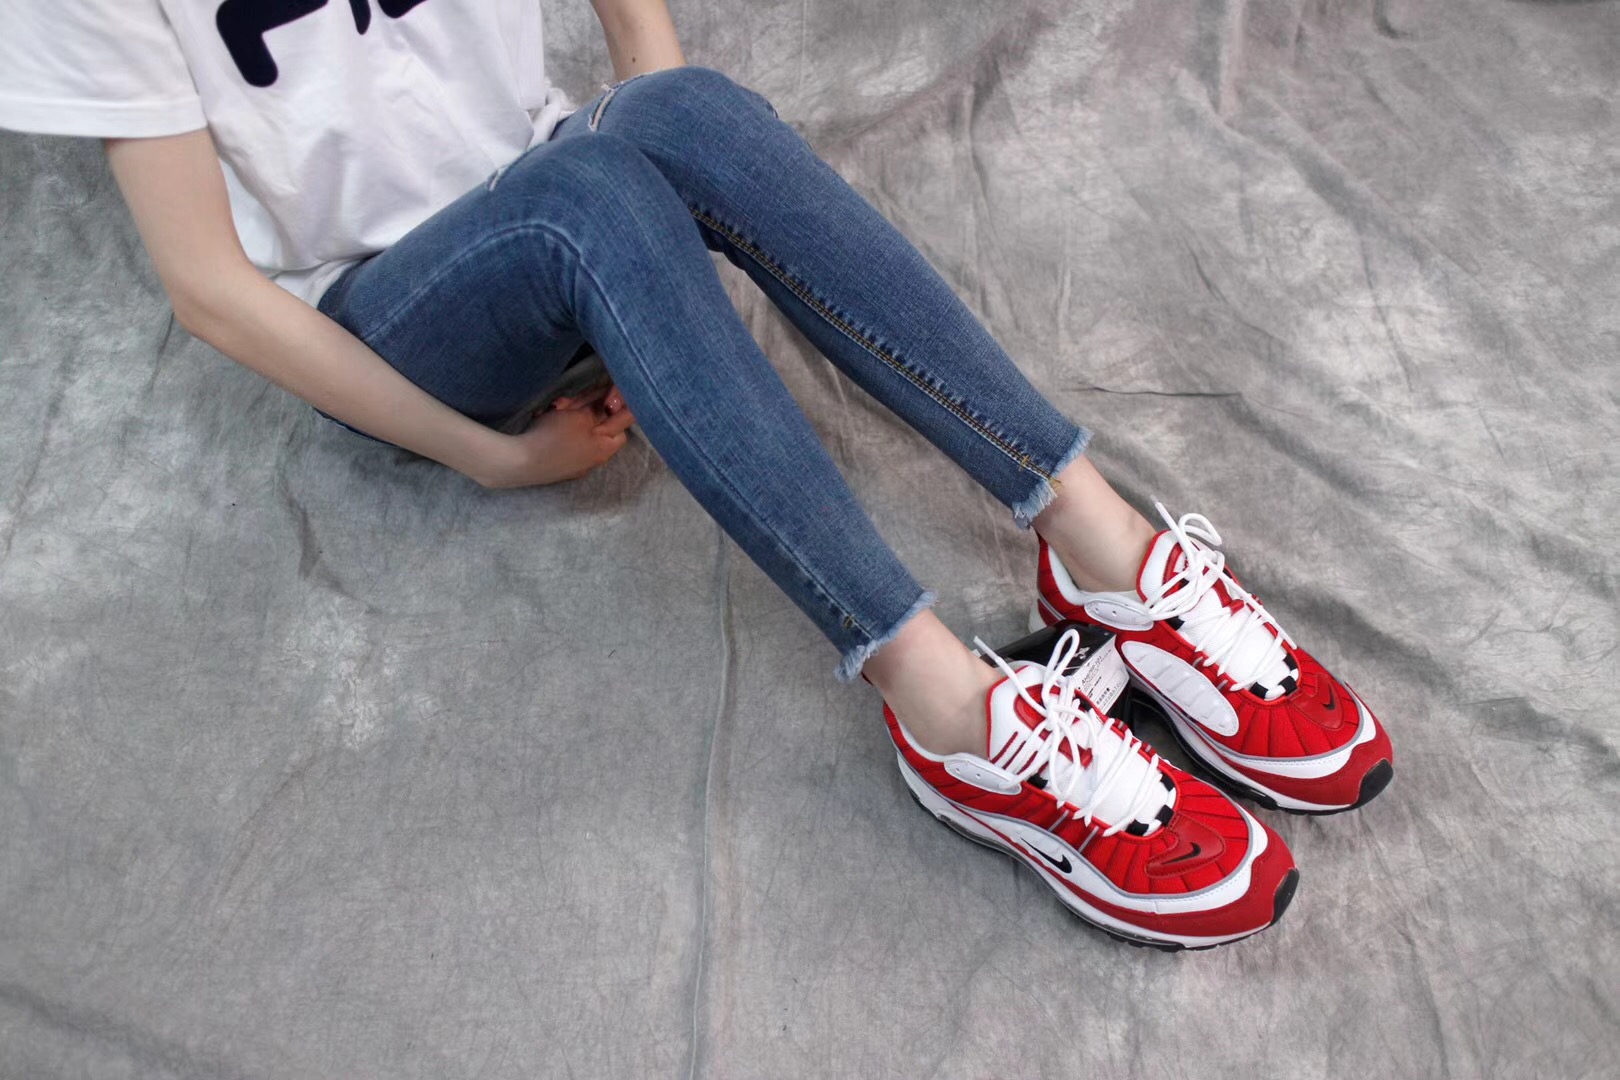 Giày Nike Air Max 98 màu đỏ trắng